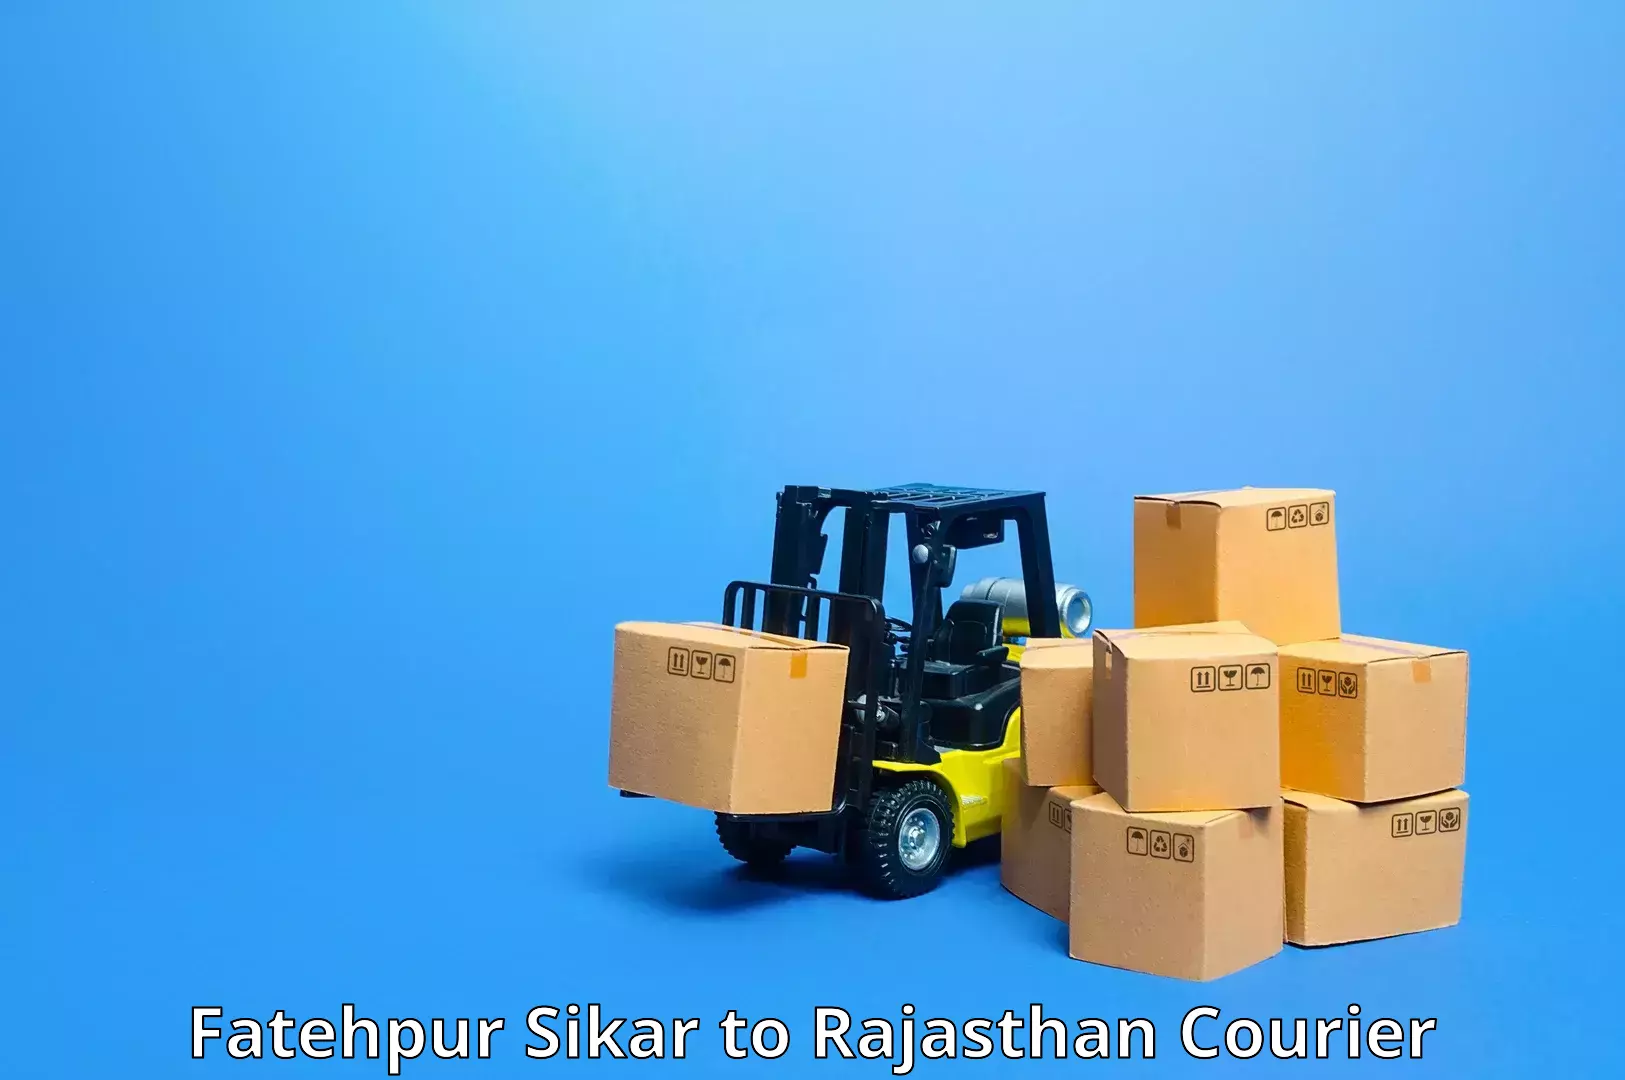 High-performance logistics Fatehpur Sikar to Merta